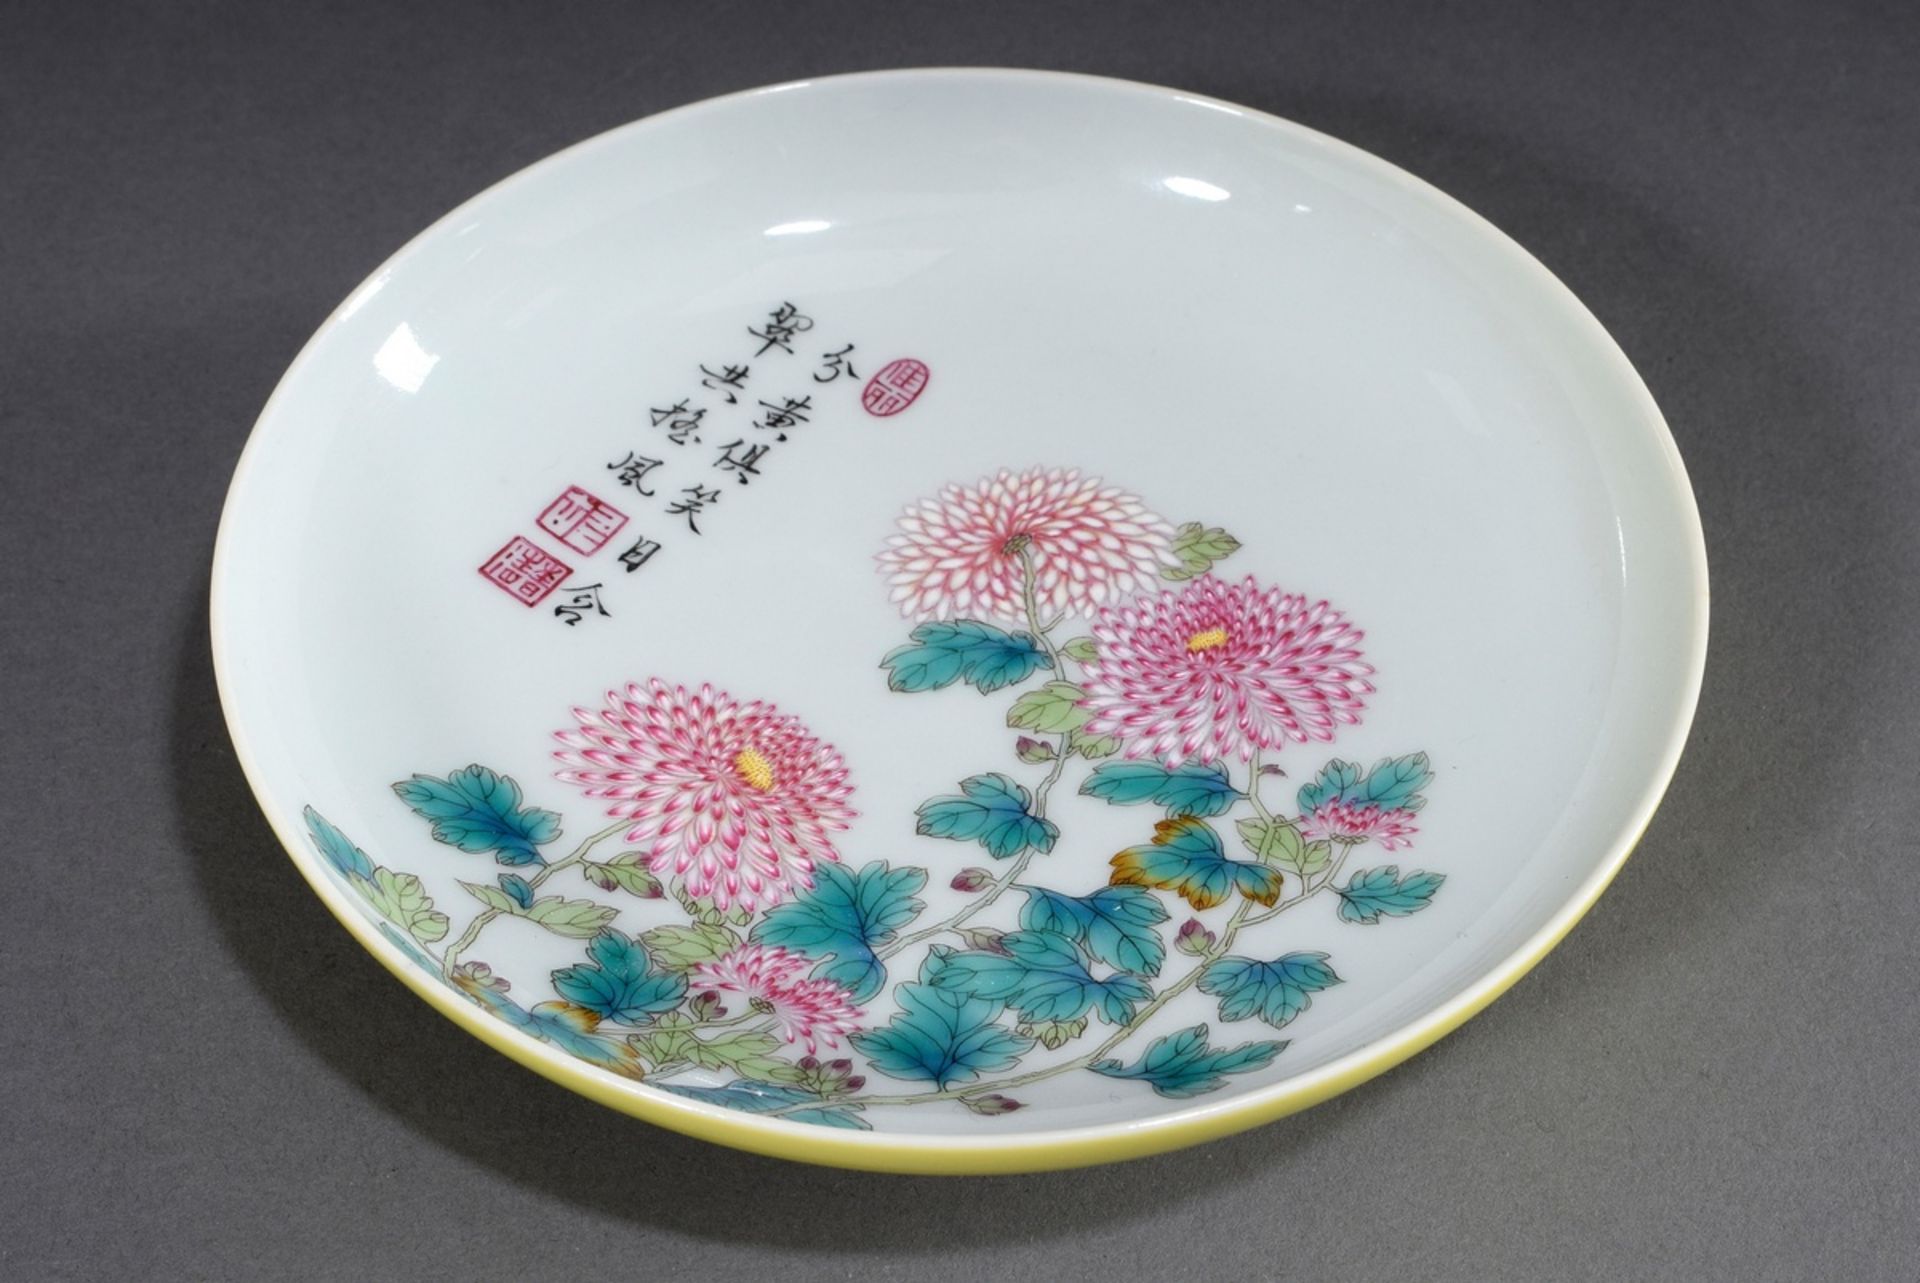 Flache chinesische Schale "Chrysanthemen" mit se | Flat Chinese bowl "Chrysanthemums" with poem on